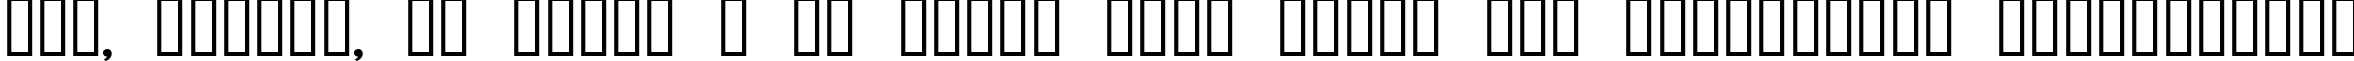 Пример написания шрифтом Aneirin текста на украинском